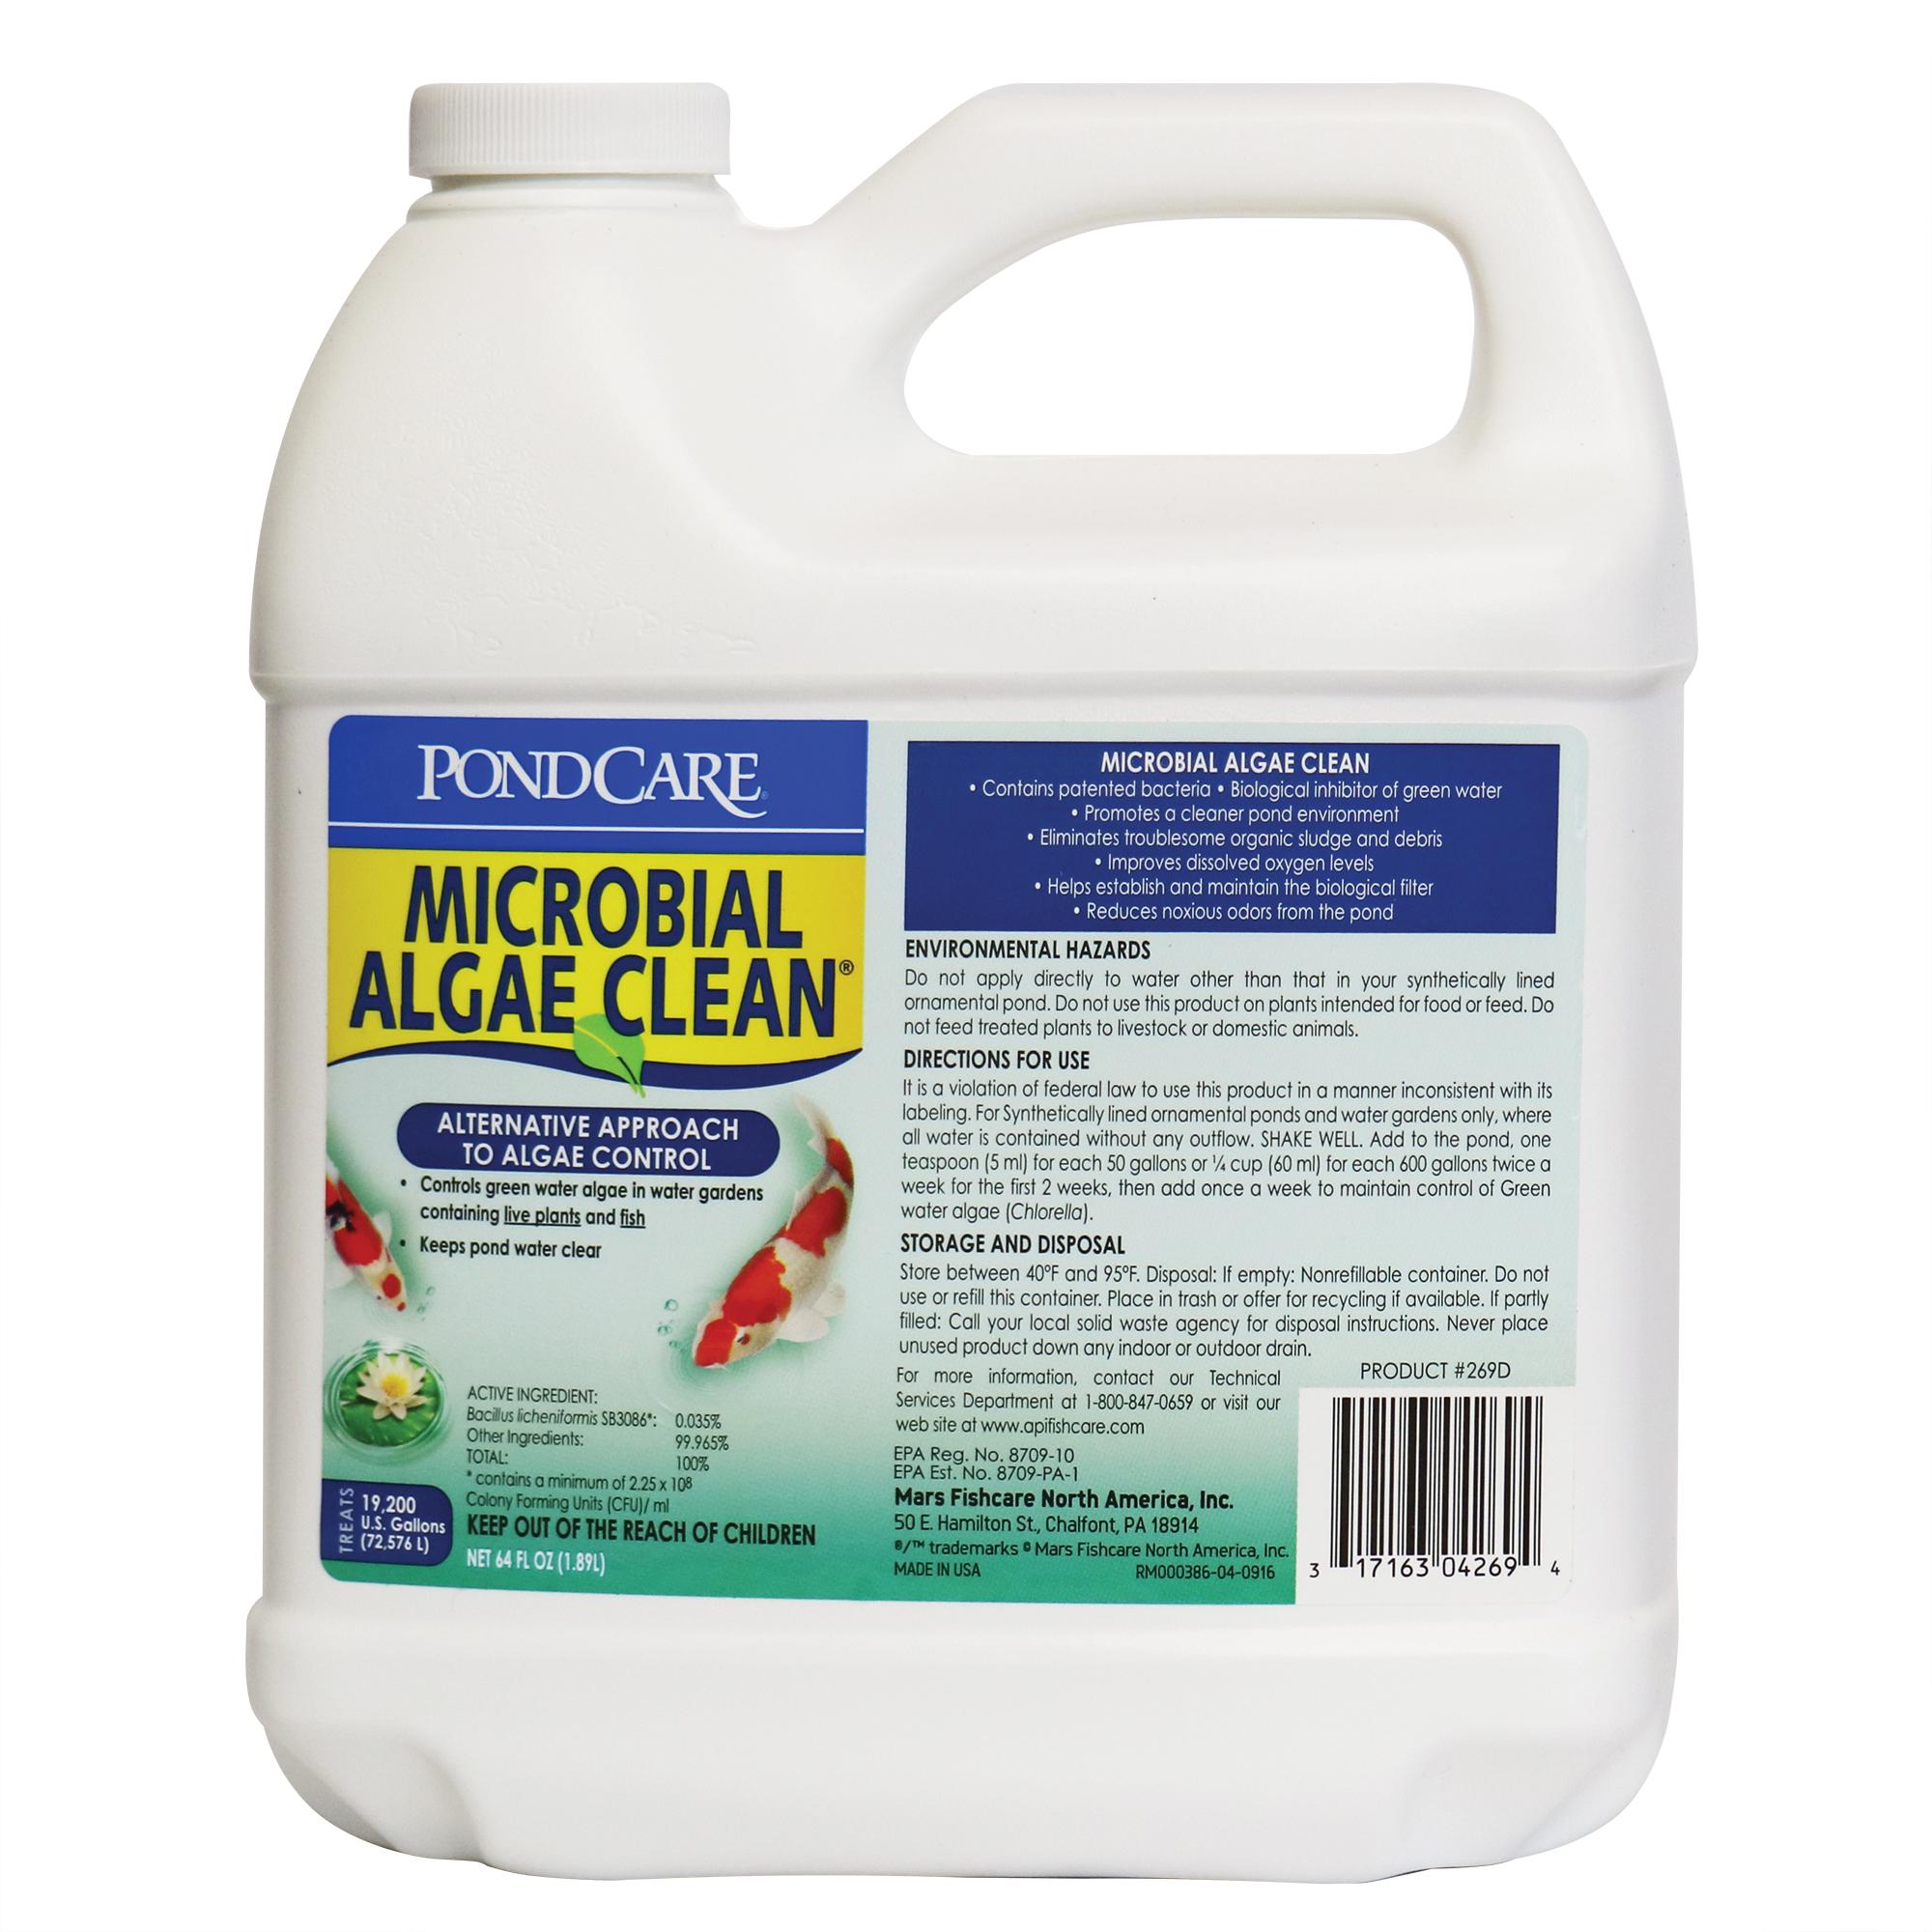 MICROBIAL ALGAE CLEAN™